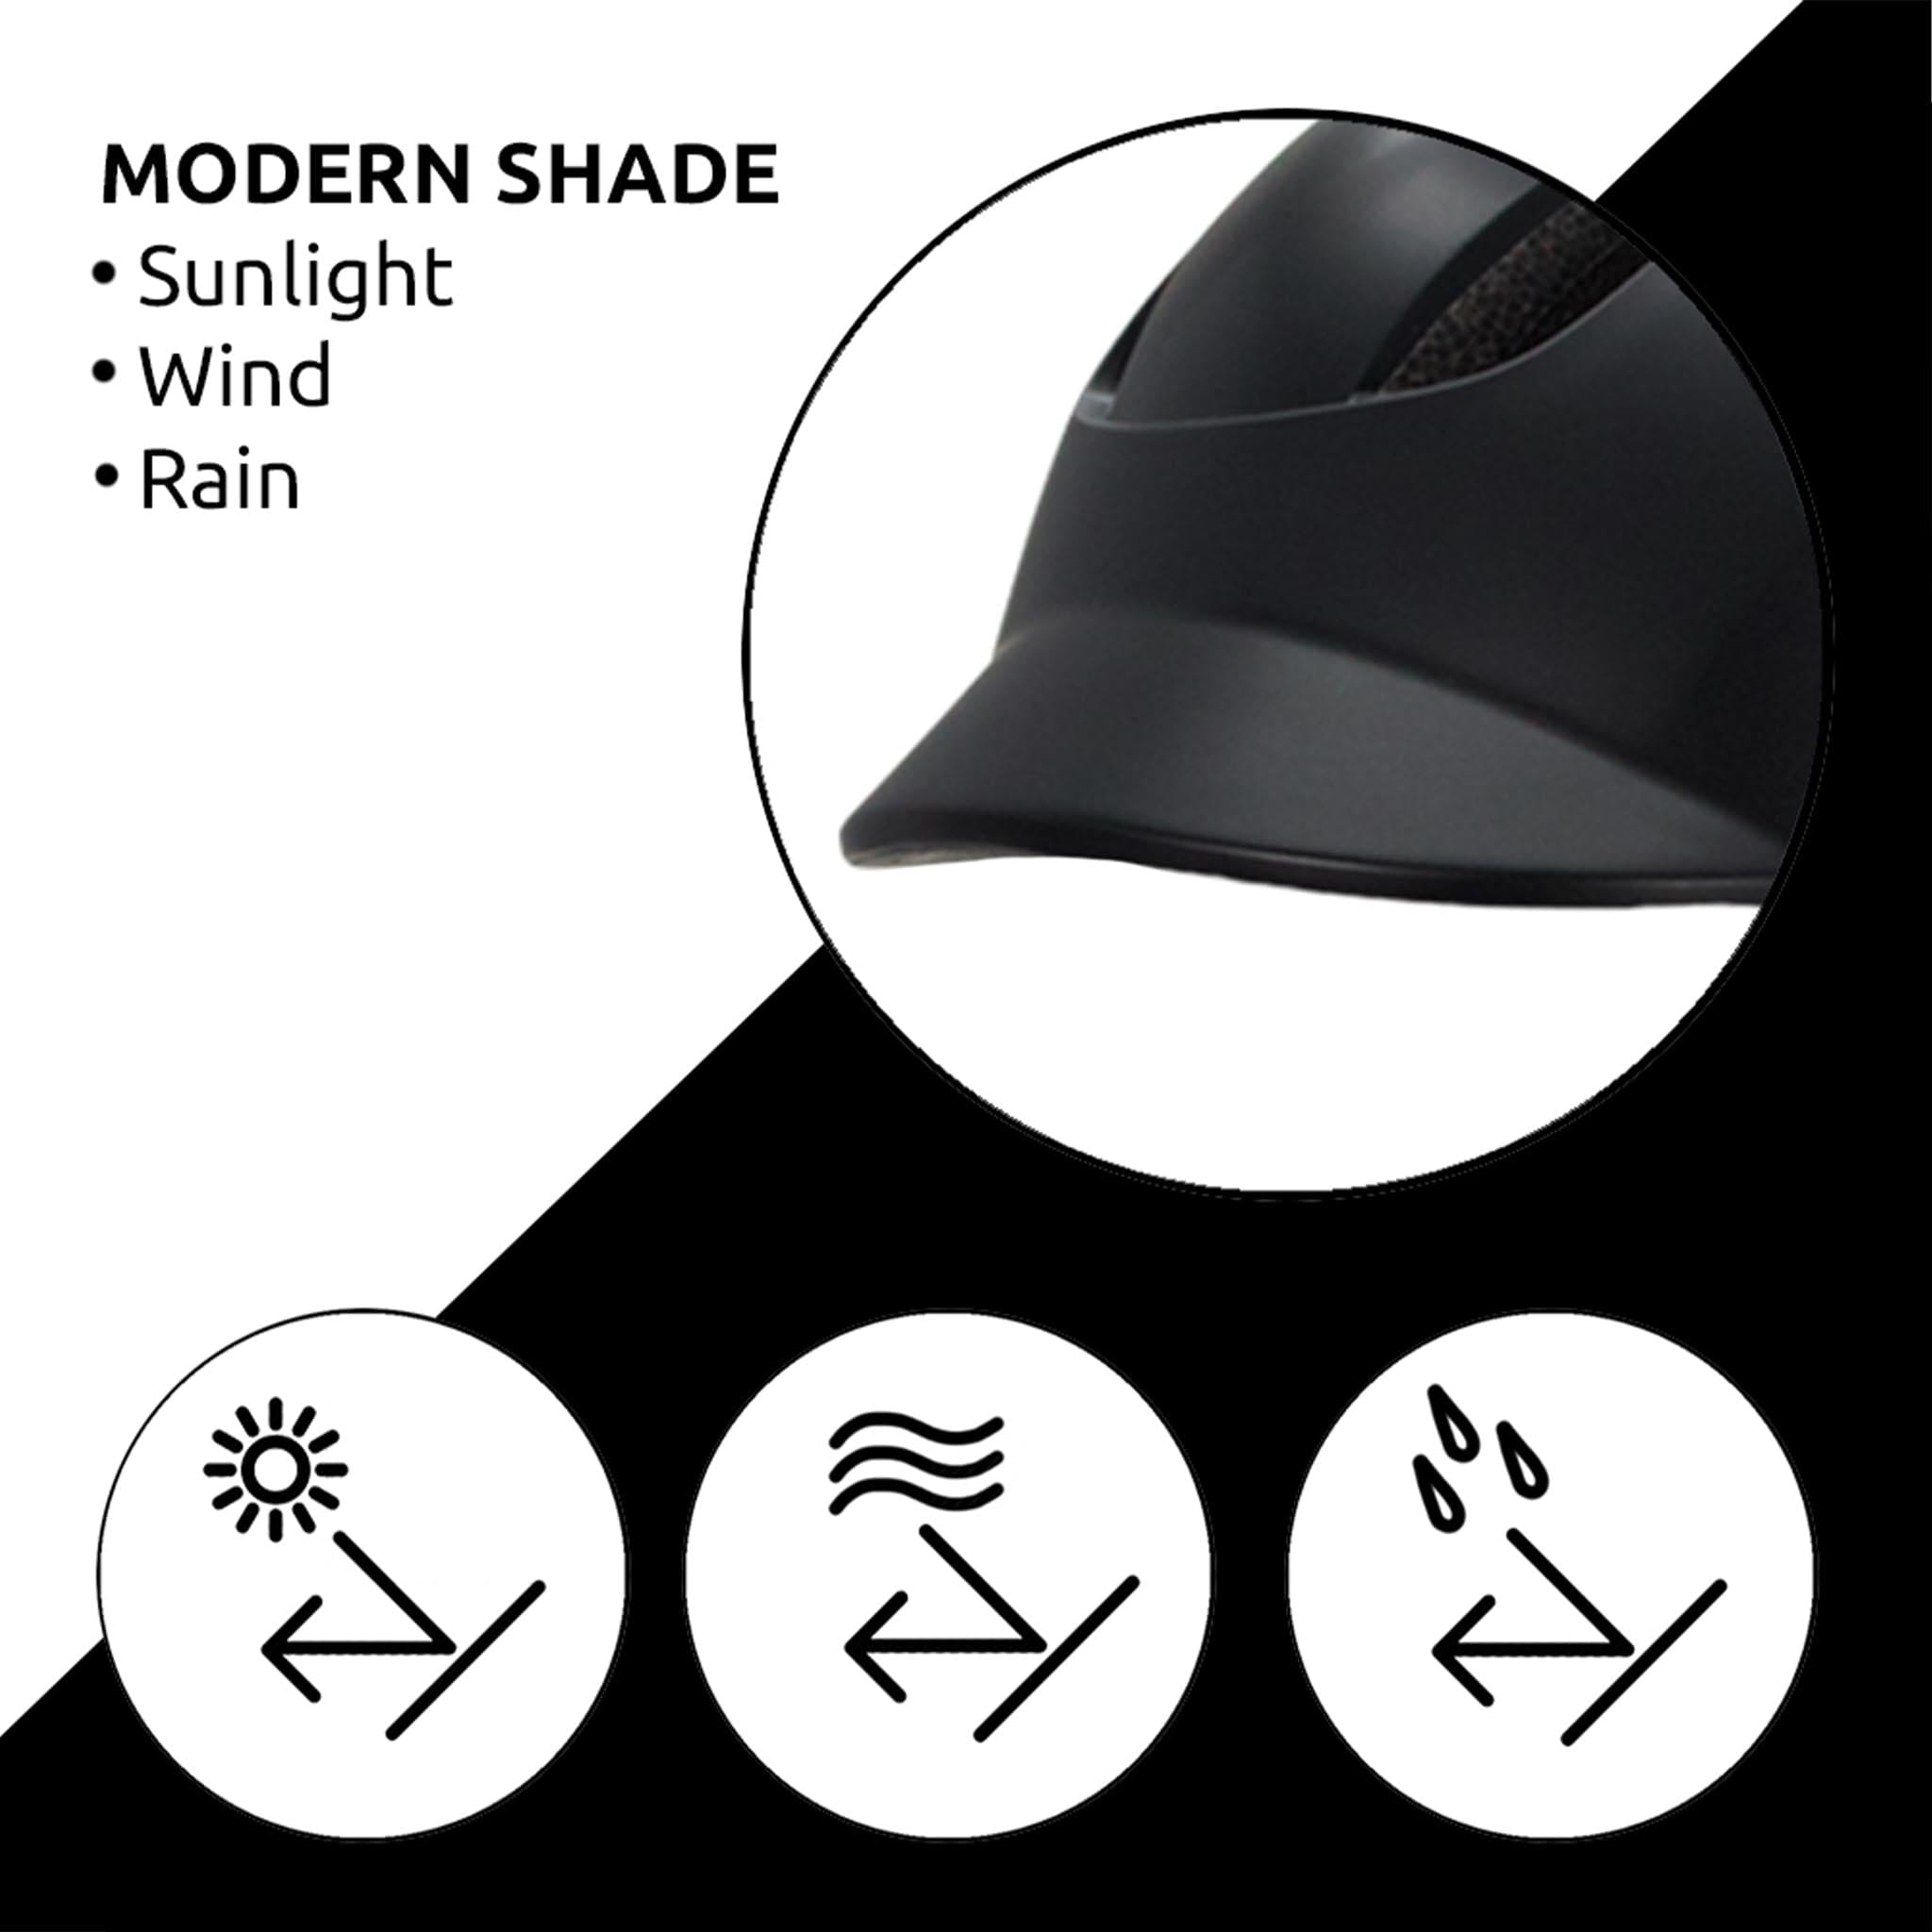 Black Aero Bike Helmet - modern shade